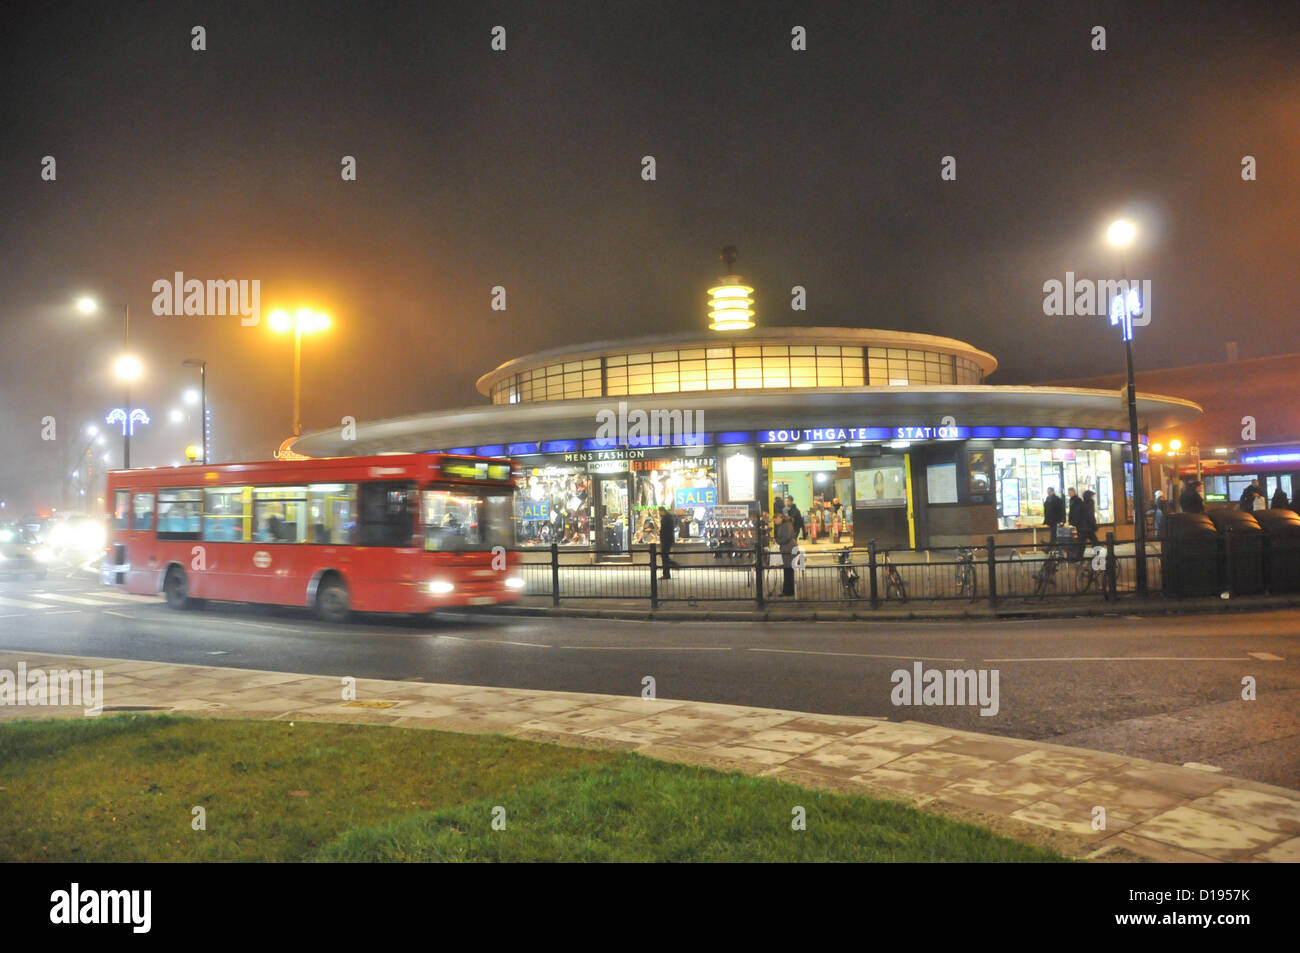 Southgate, Enfield, London, UK. 11. Dezember 2012. Die u-Bahnstation in Southgate im Nebel. Dichte Nebel in London Vororten einfrieren. Bildnachweis: Matthew Chattle / Alamy Live News Stockfoto